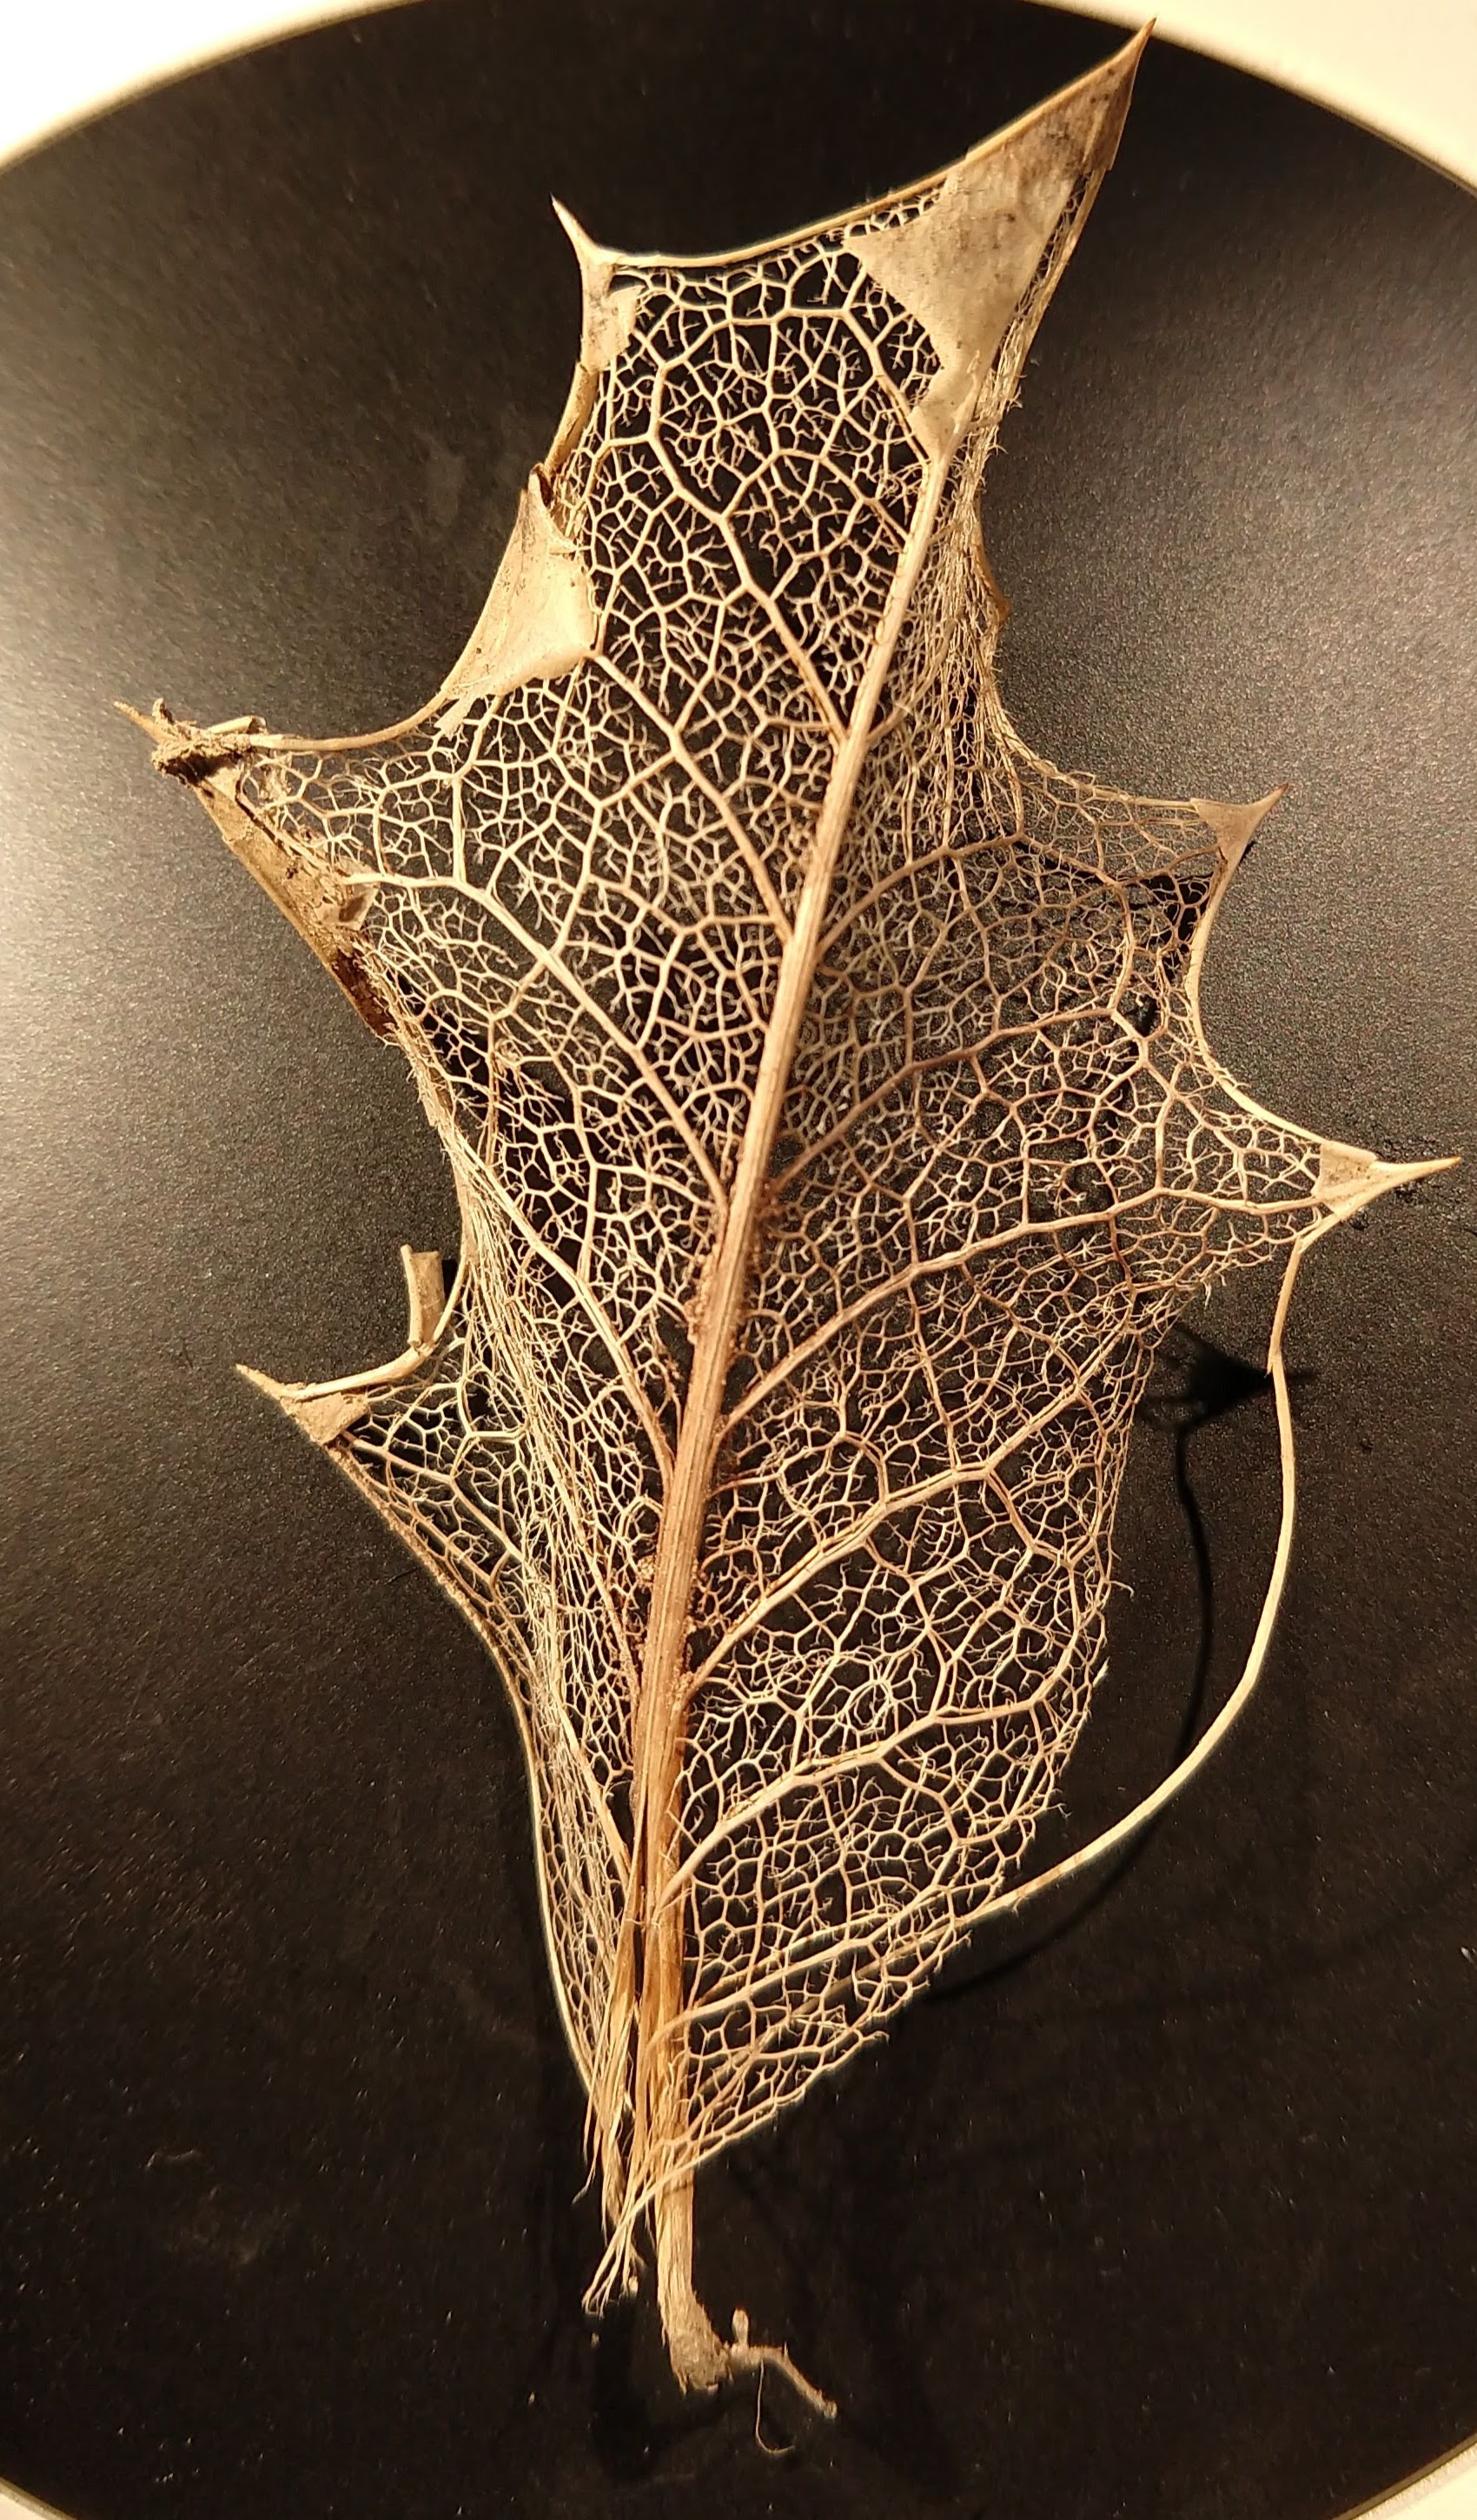 A skeletal holly leaf showing netted venation